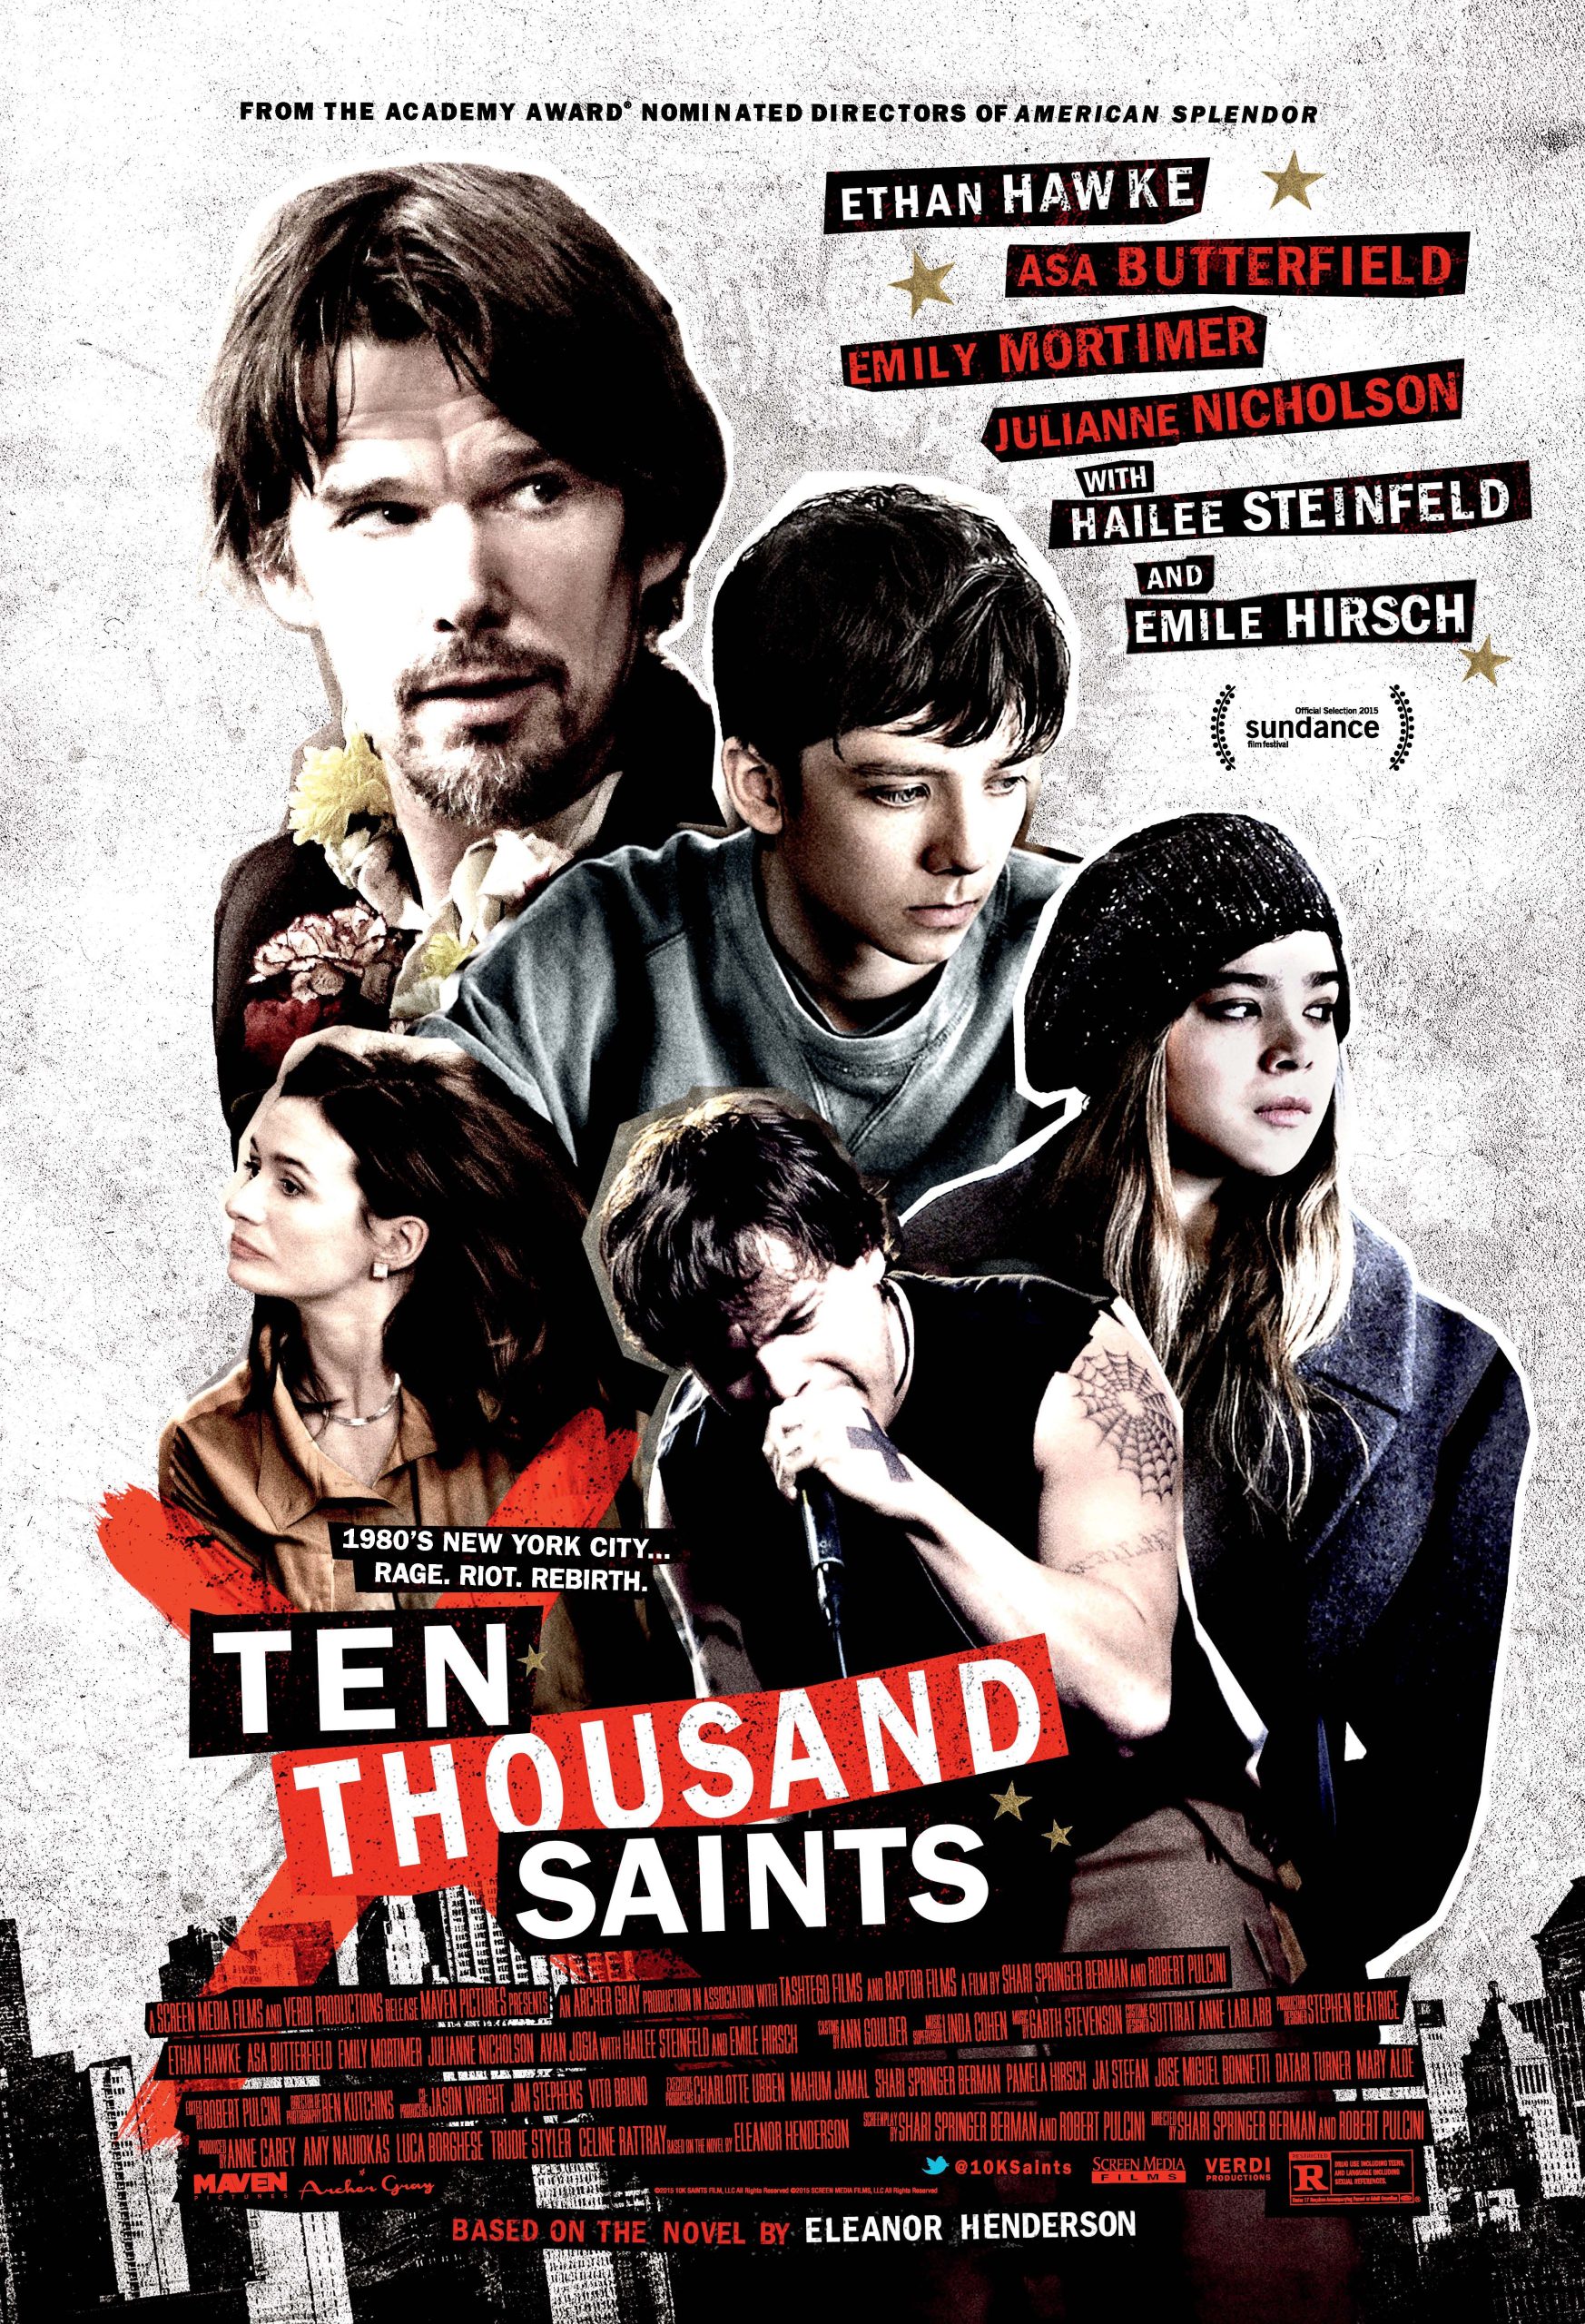 Ten Thousand Saints (2015) Ethan Hawke